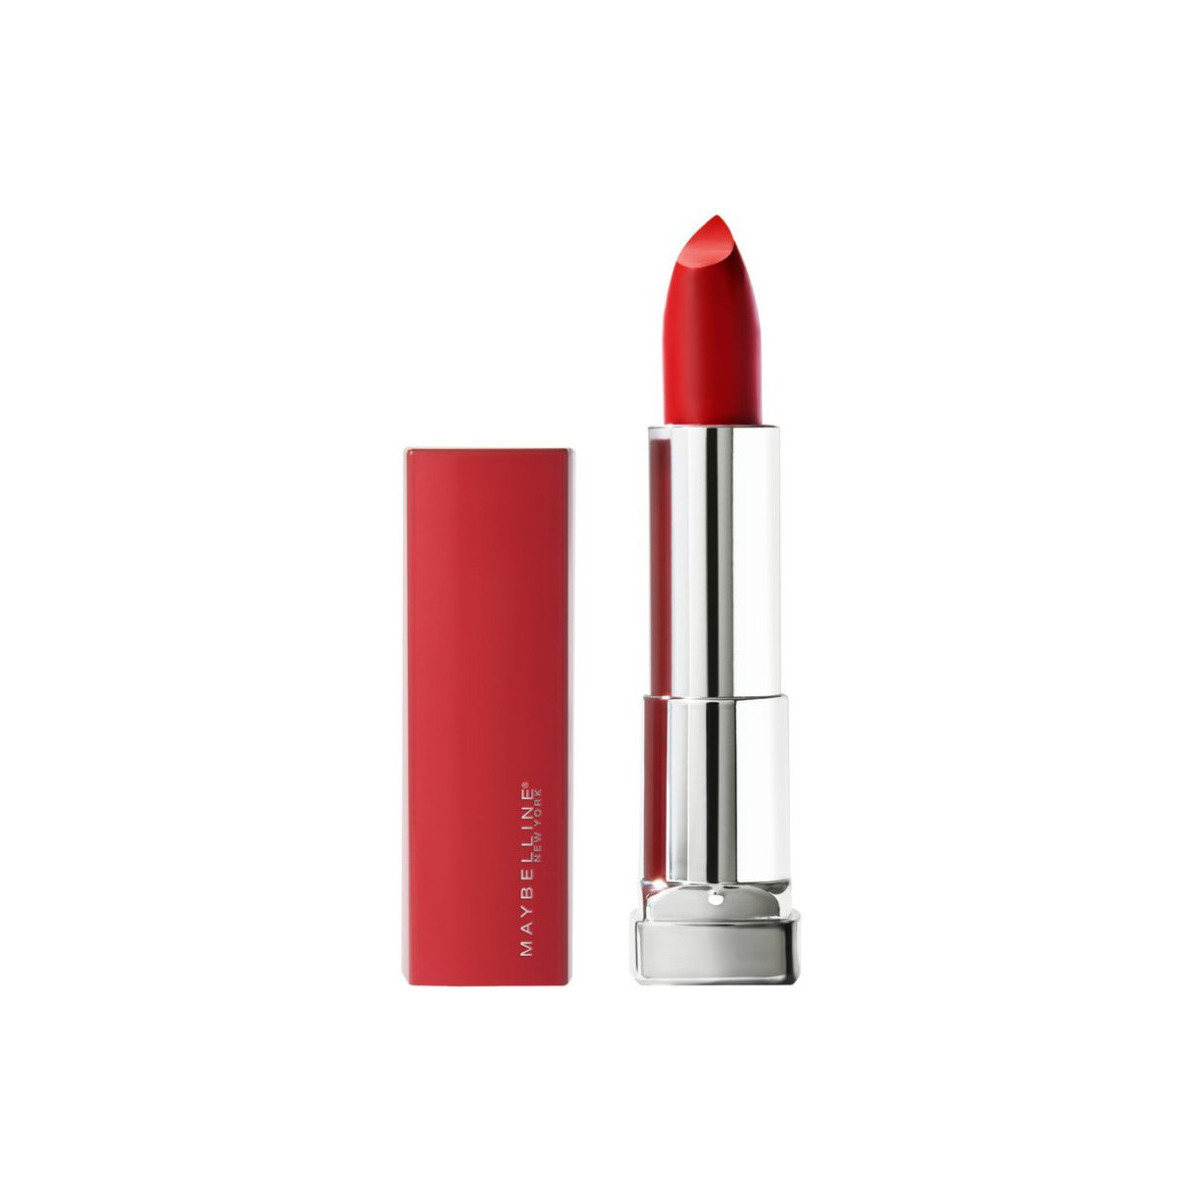 schoonheid Dames Lipstick Maybelline New York Kleurensensatie Gemaakt voor alle universele lippenstiften Rood